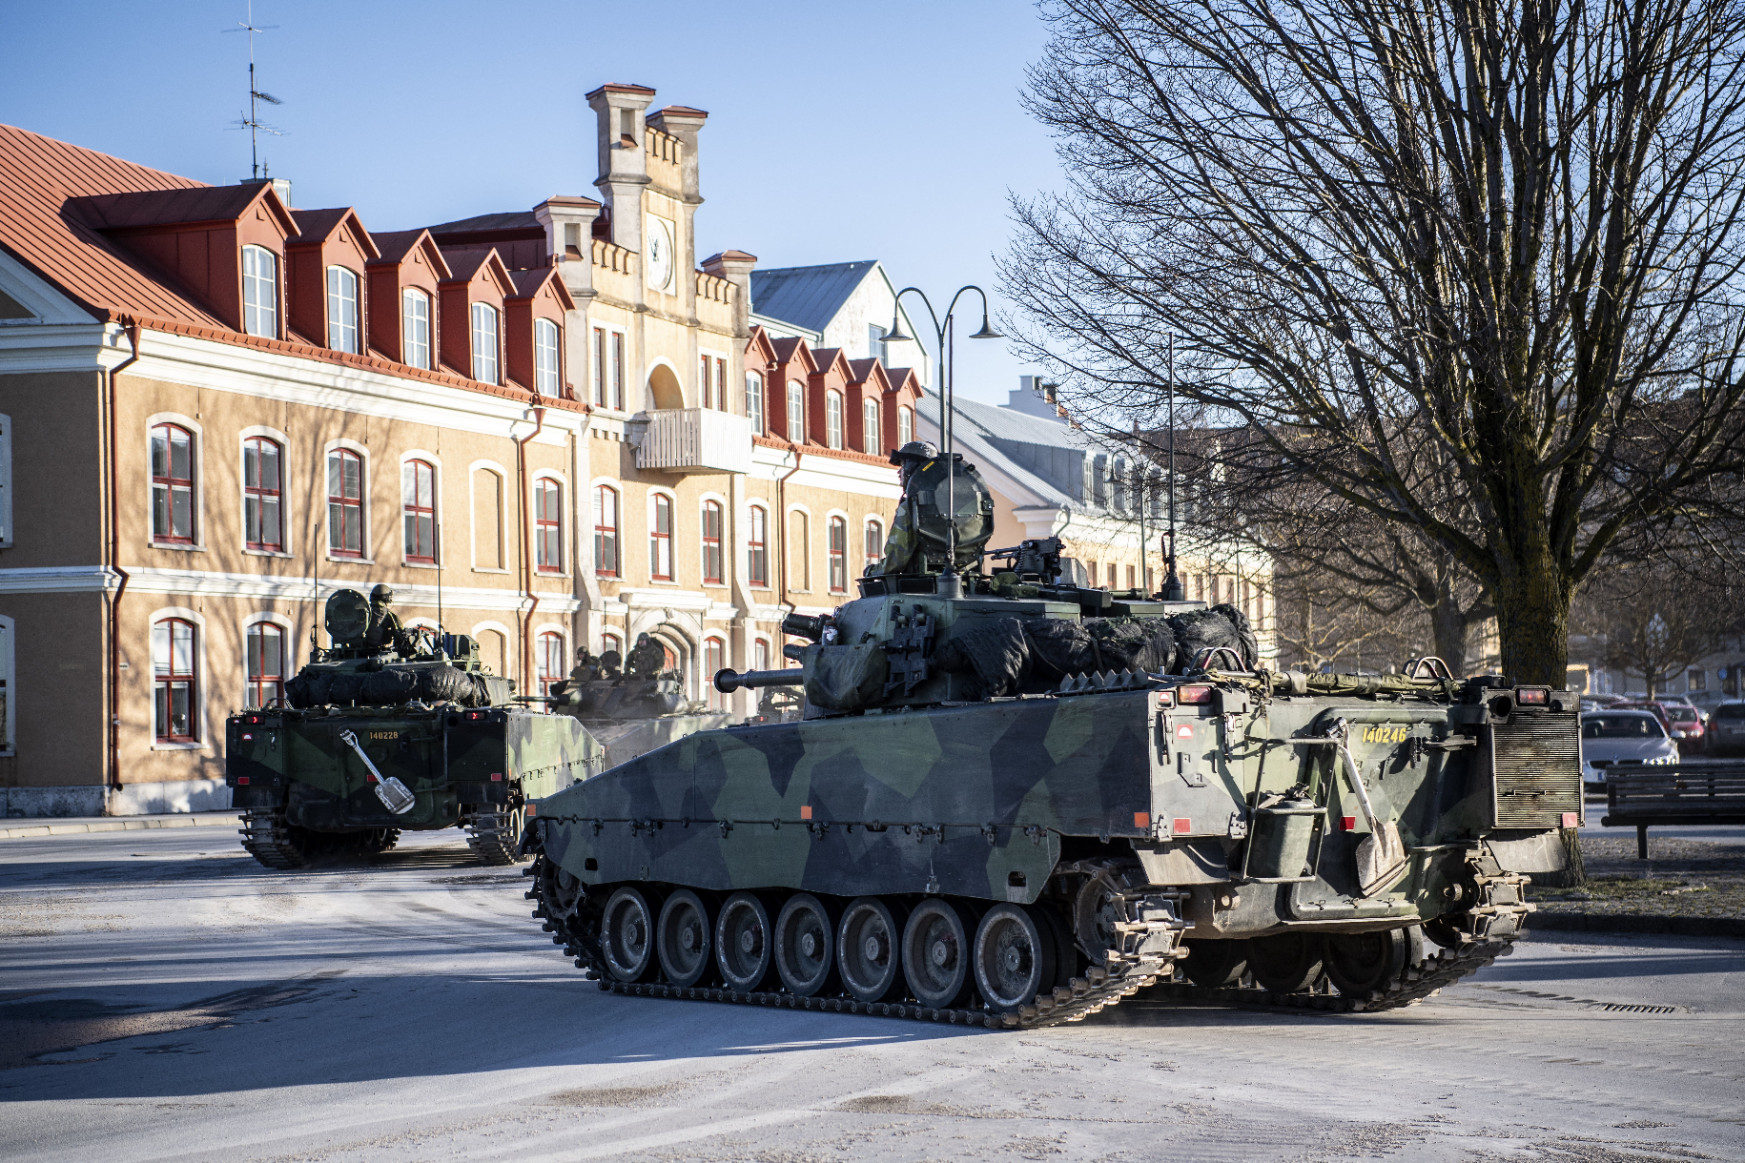 Tankokat vezényeltek ki Svédországban egy szigetre az oroszoktól való félelem miatt